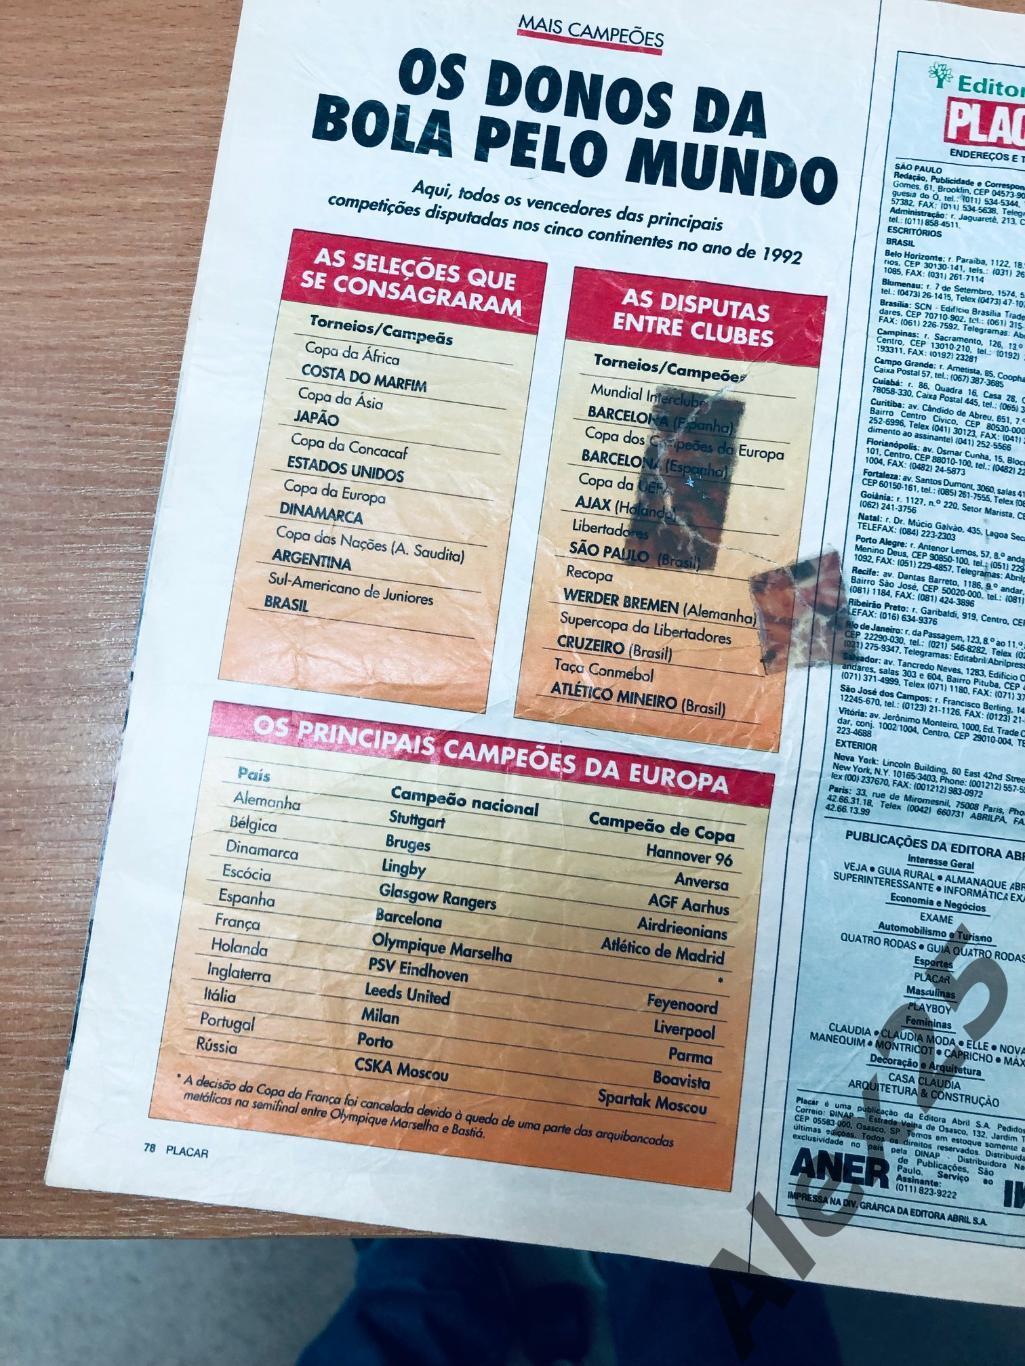 Журнал-справочник. Плакар / Placar Campeos 92 (Бразилия) № 1079 (январь) 1992 г. 6